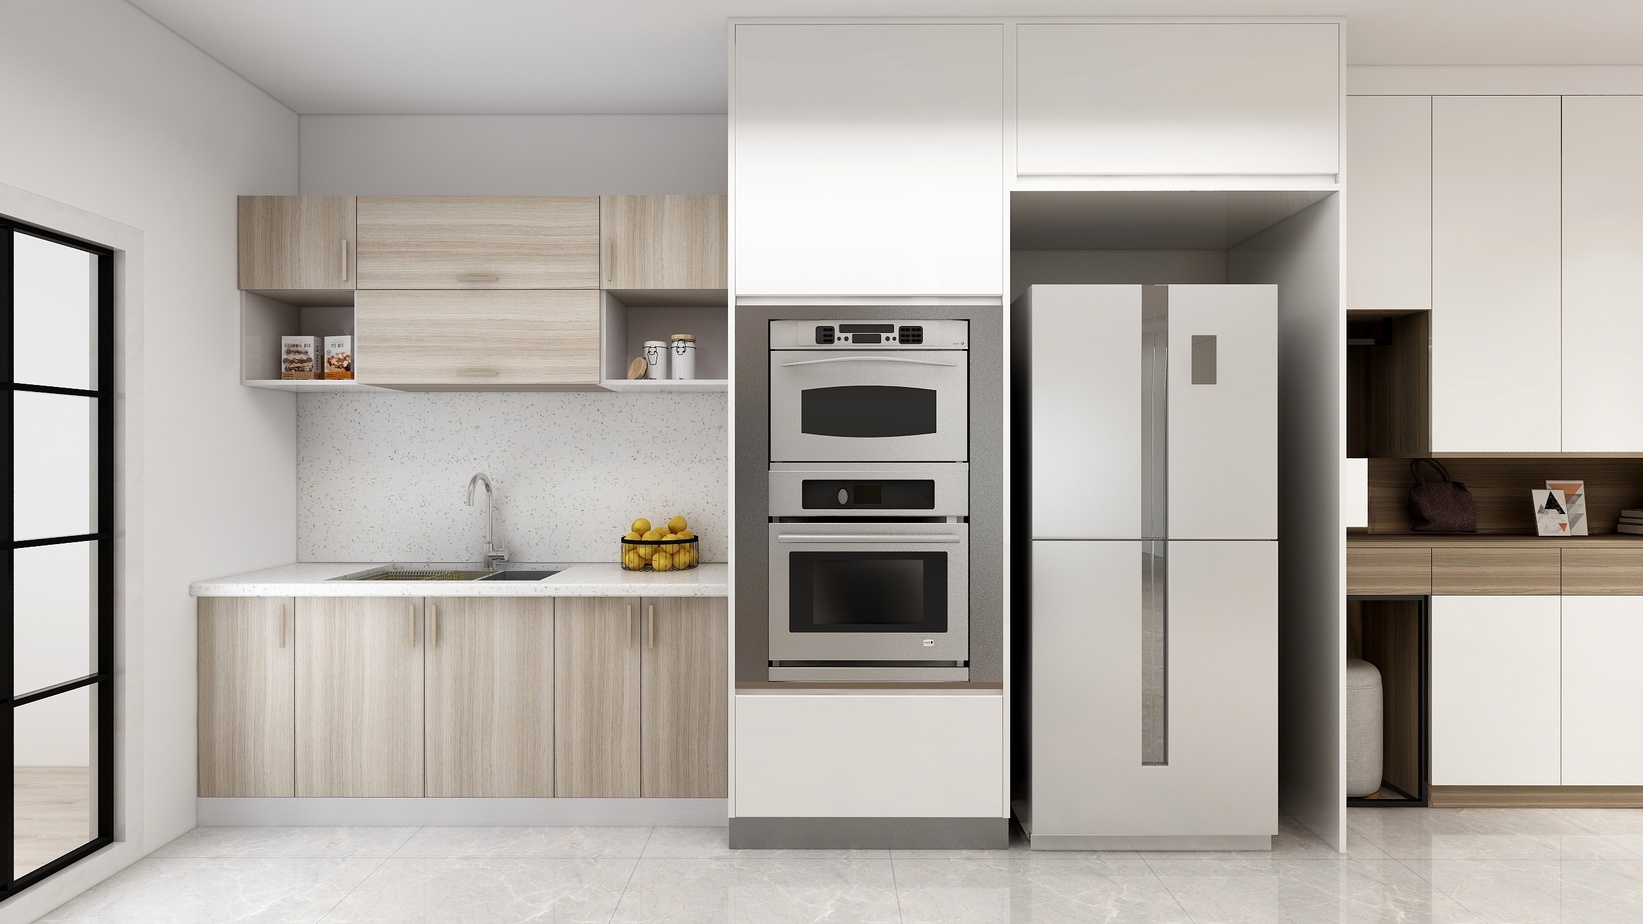 Phòng bếp thiết kế đơn giản với nội thất hiện đại và thông minh